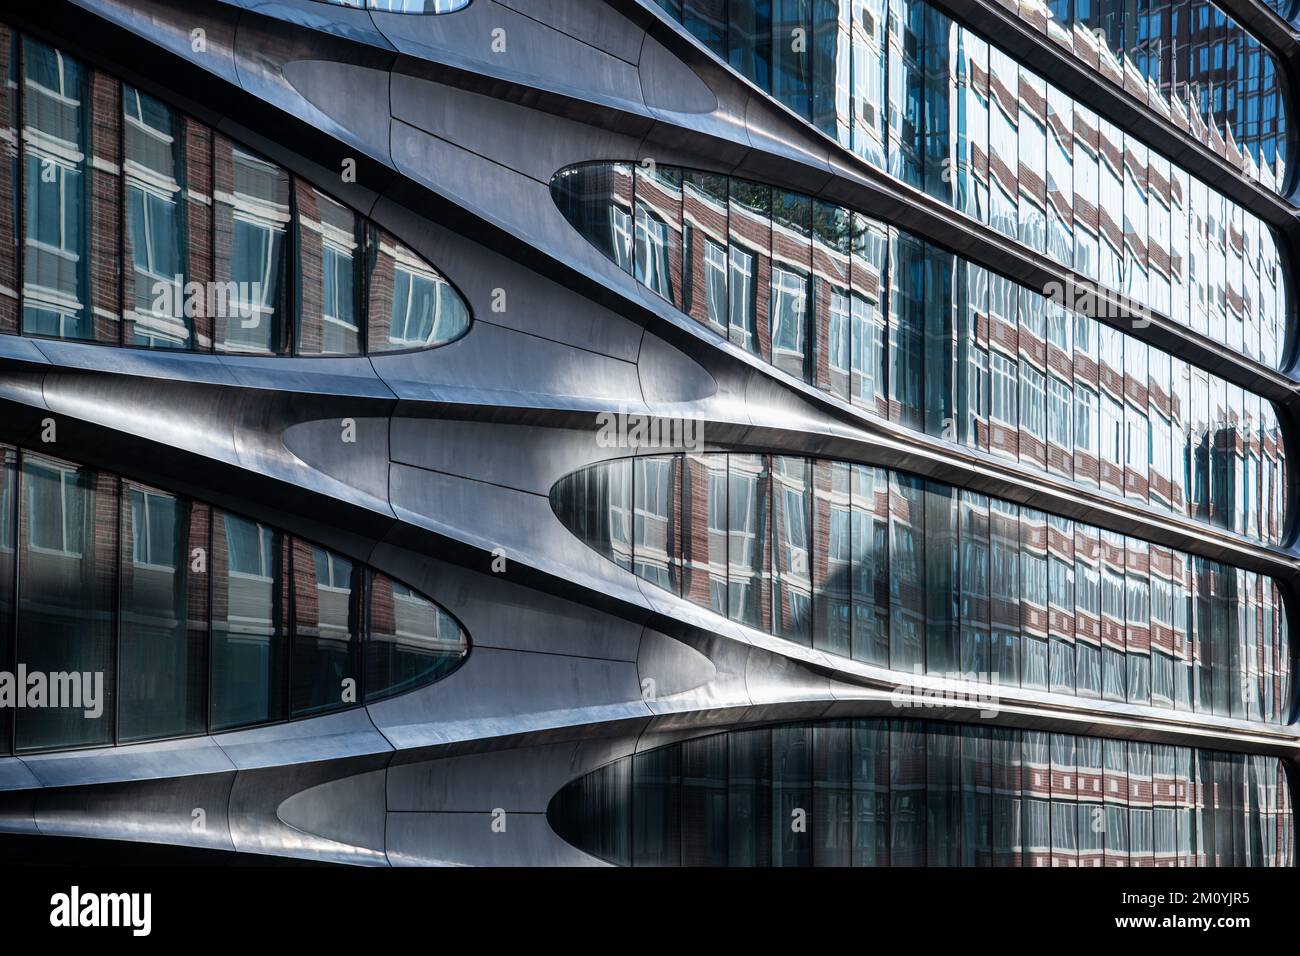 Les lignes courbes du revêtement métallique d'un bâtiment ultramoderne donnent sur des fenêtres en verre qui reflètent un bâtiment en brique Banque D'Images